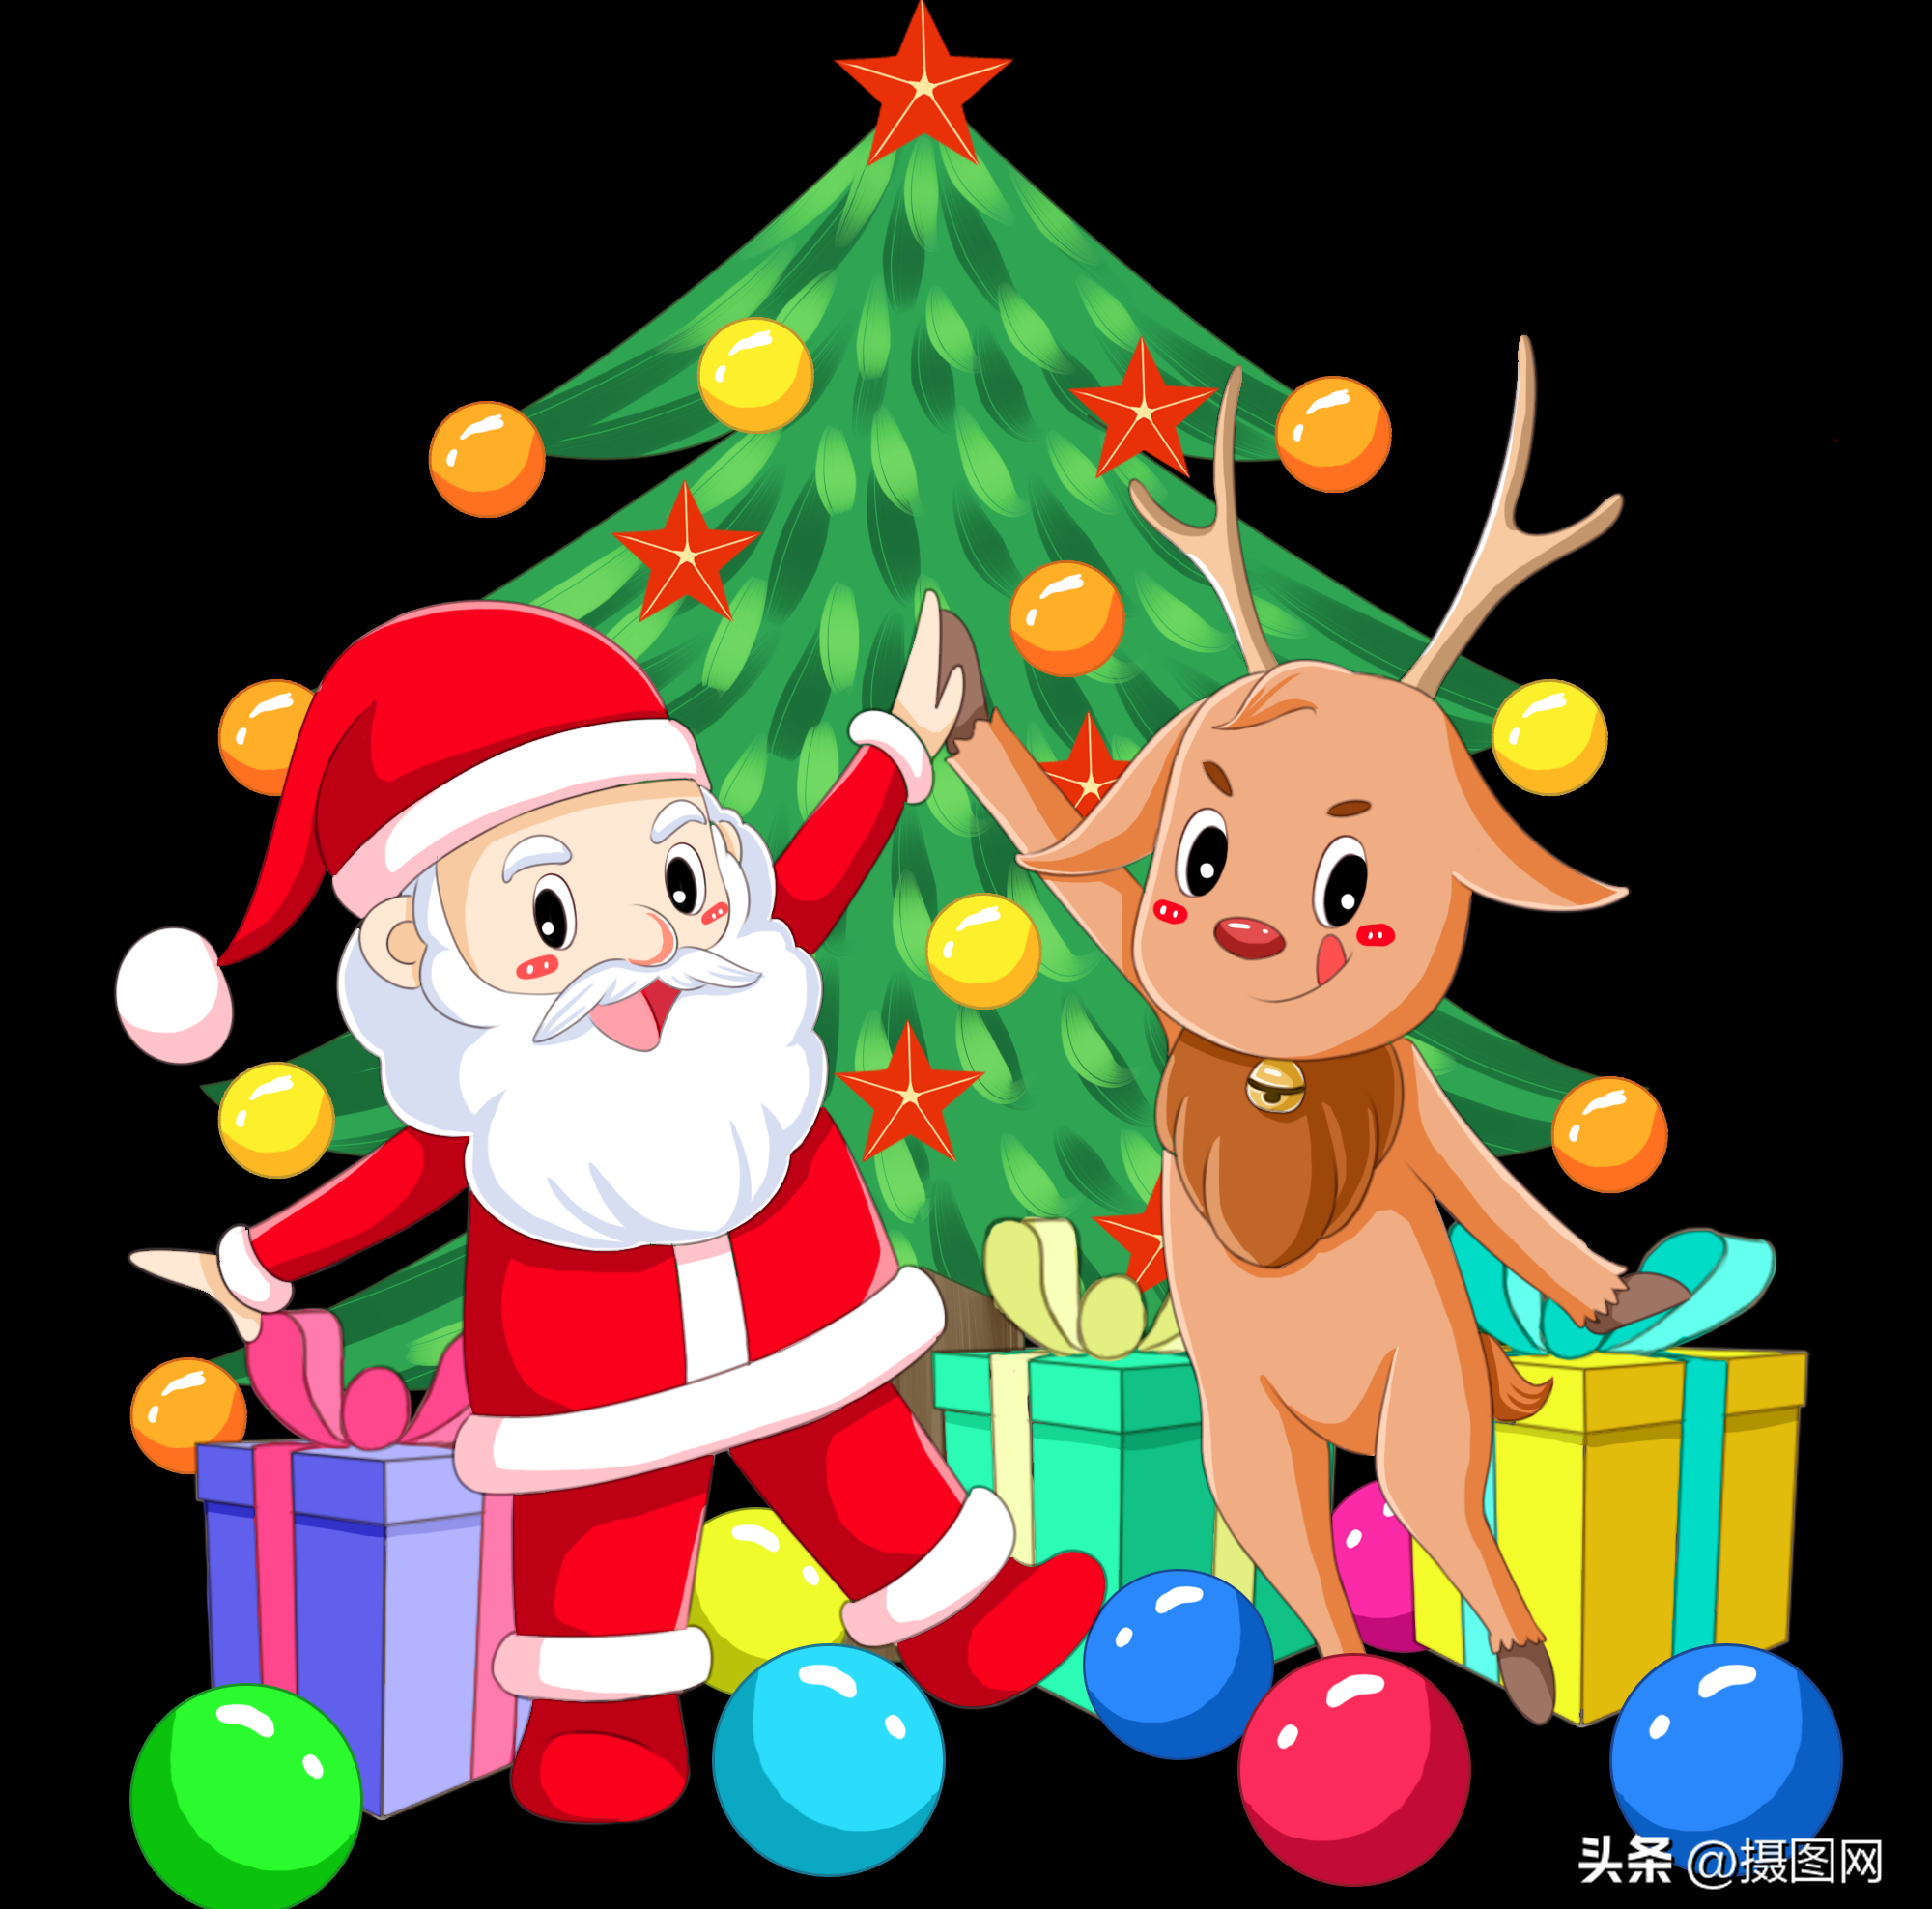 圣诞老人和圣诞树的画法(搜索圣诞老人的插画)